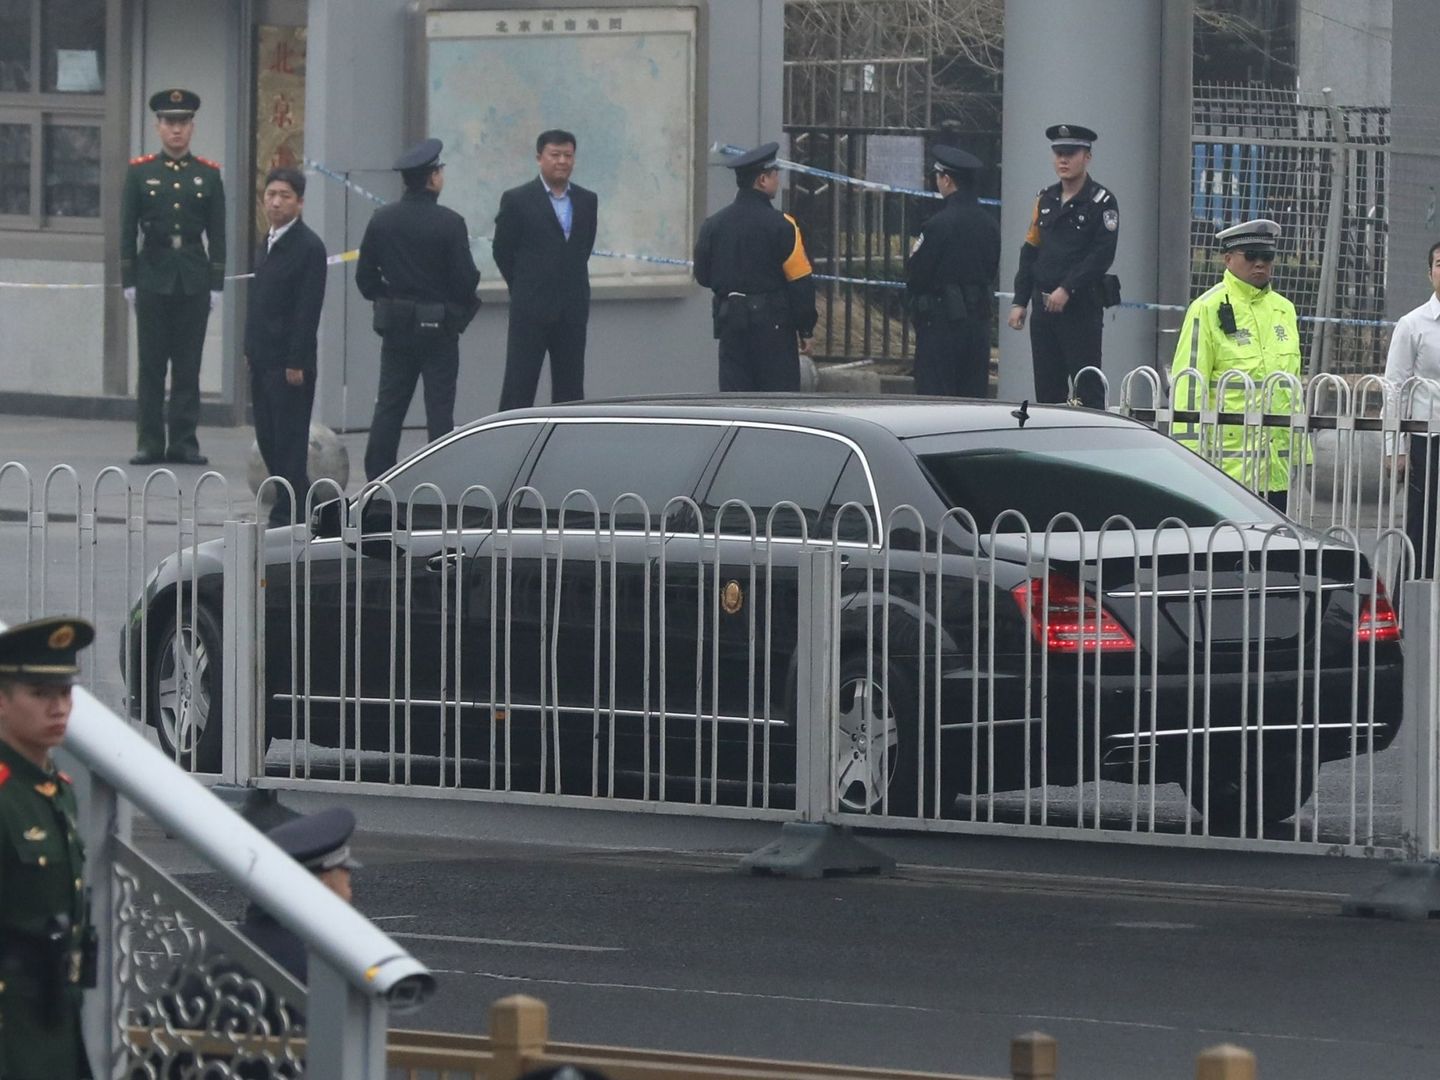 Imagen de la limusina en la que se cree que podría viajar un miembro de una delegación de Corea del Norte, en Pekín, China, el 27 de marzo de 2018. (EFE)